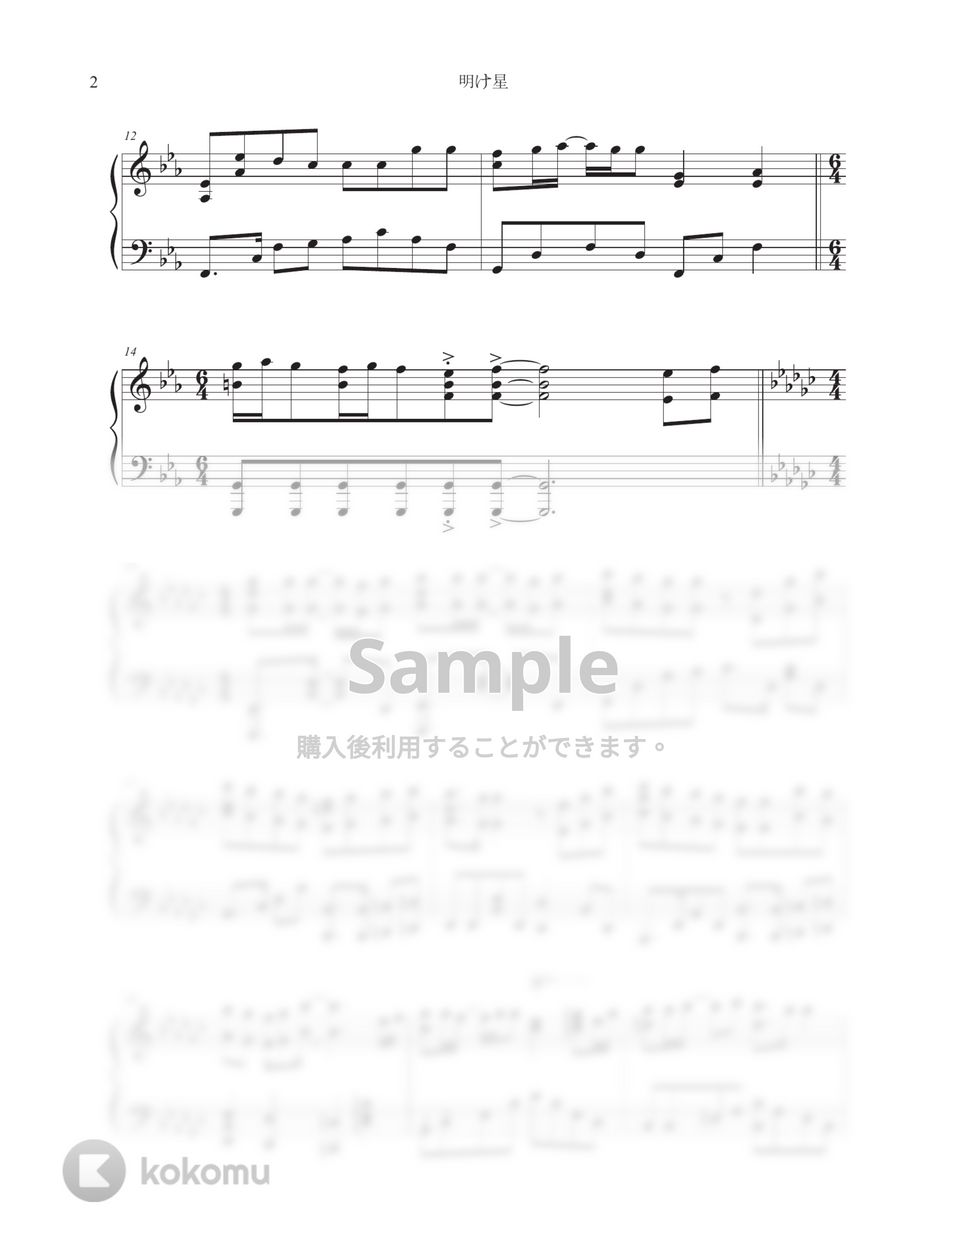 LiSA - 明け星 (中級 / 『鬼滅の刃-無限列車編-OP』) by Tully Piano